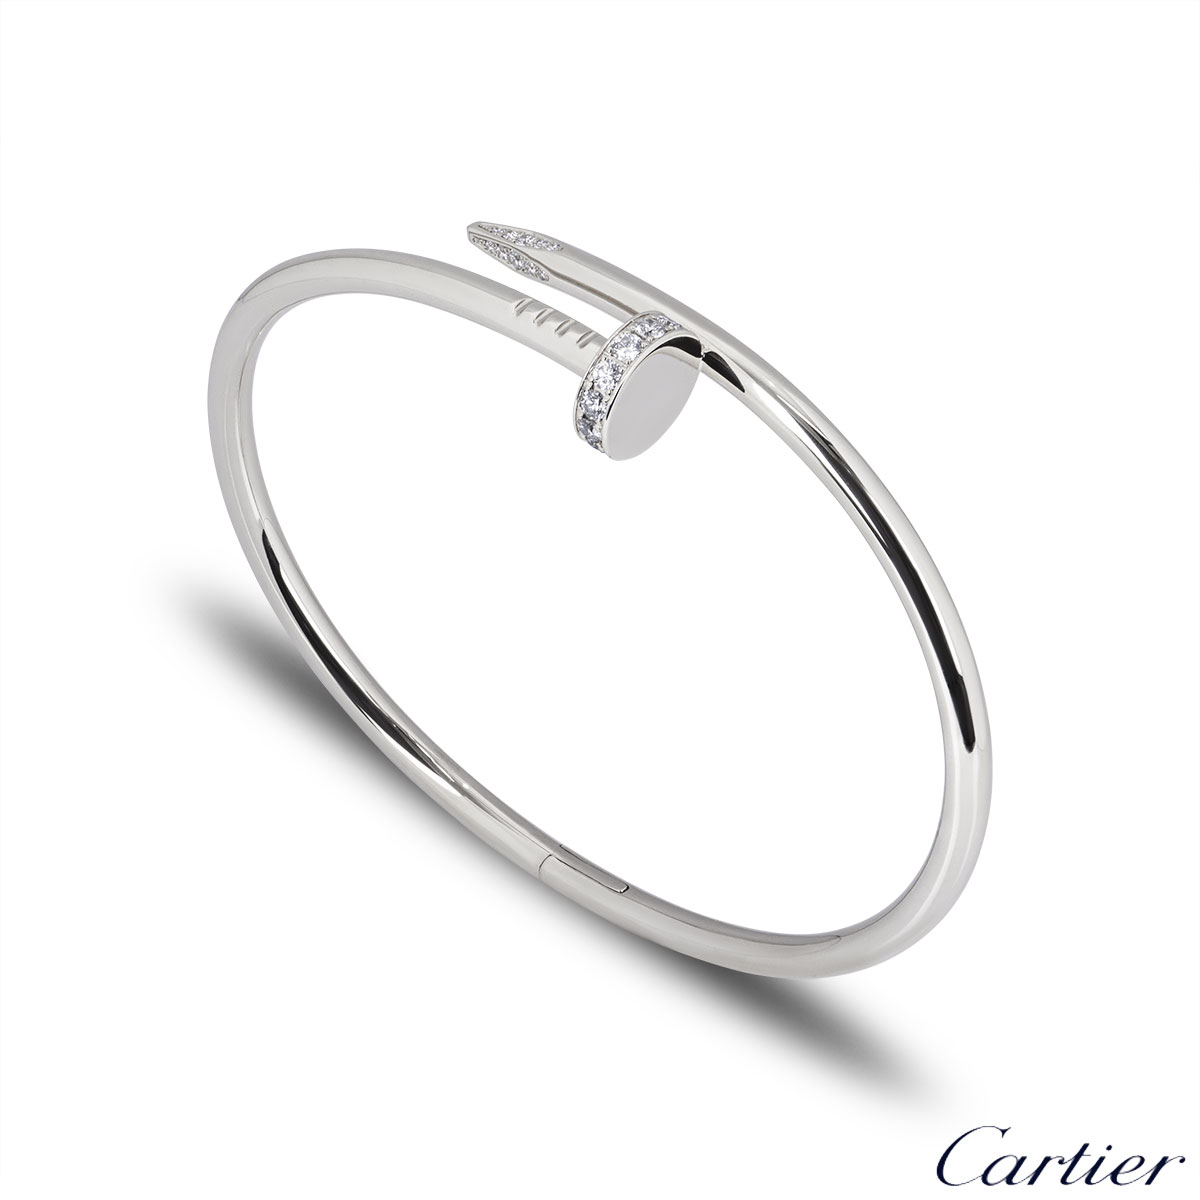 Cartier White Gold Diamond Juste Un Clou Bracelet Size 16 B6048716